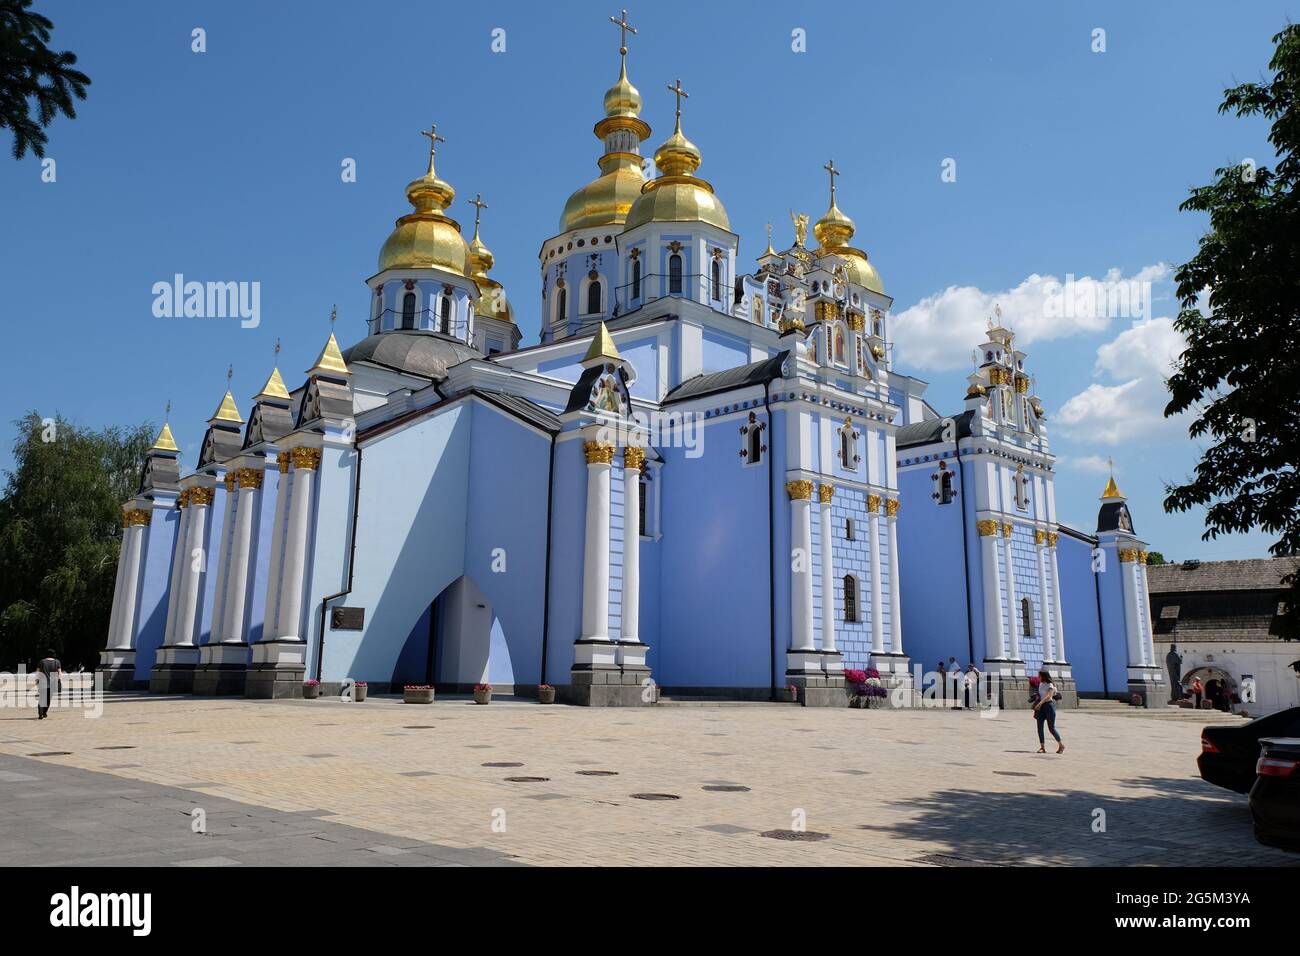 El Monasterio de San Miguel, con cúpulas de oro, situado en la Ciudad Alta,  es la sede de la Iglesia Ortodoxa de Ucrania y el Metropolitano de Kiev  Fotografía de stock -